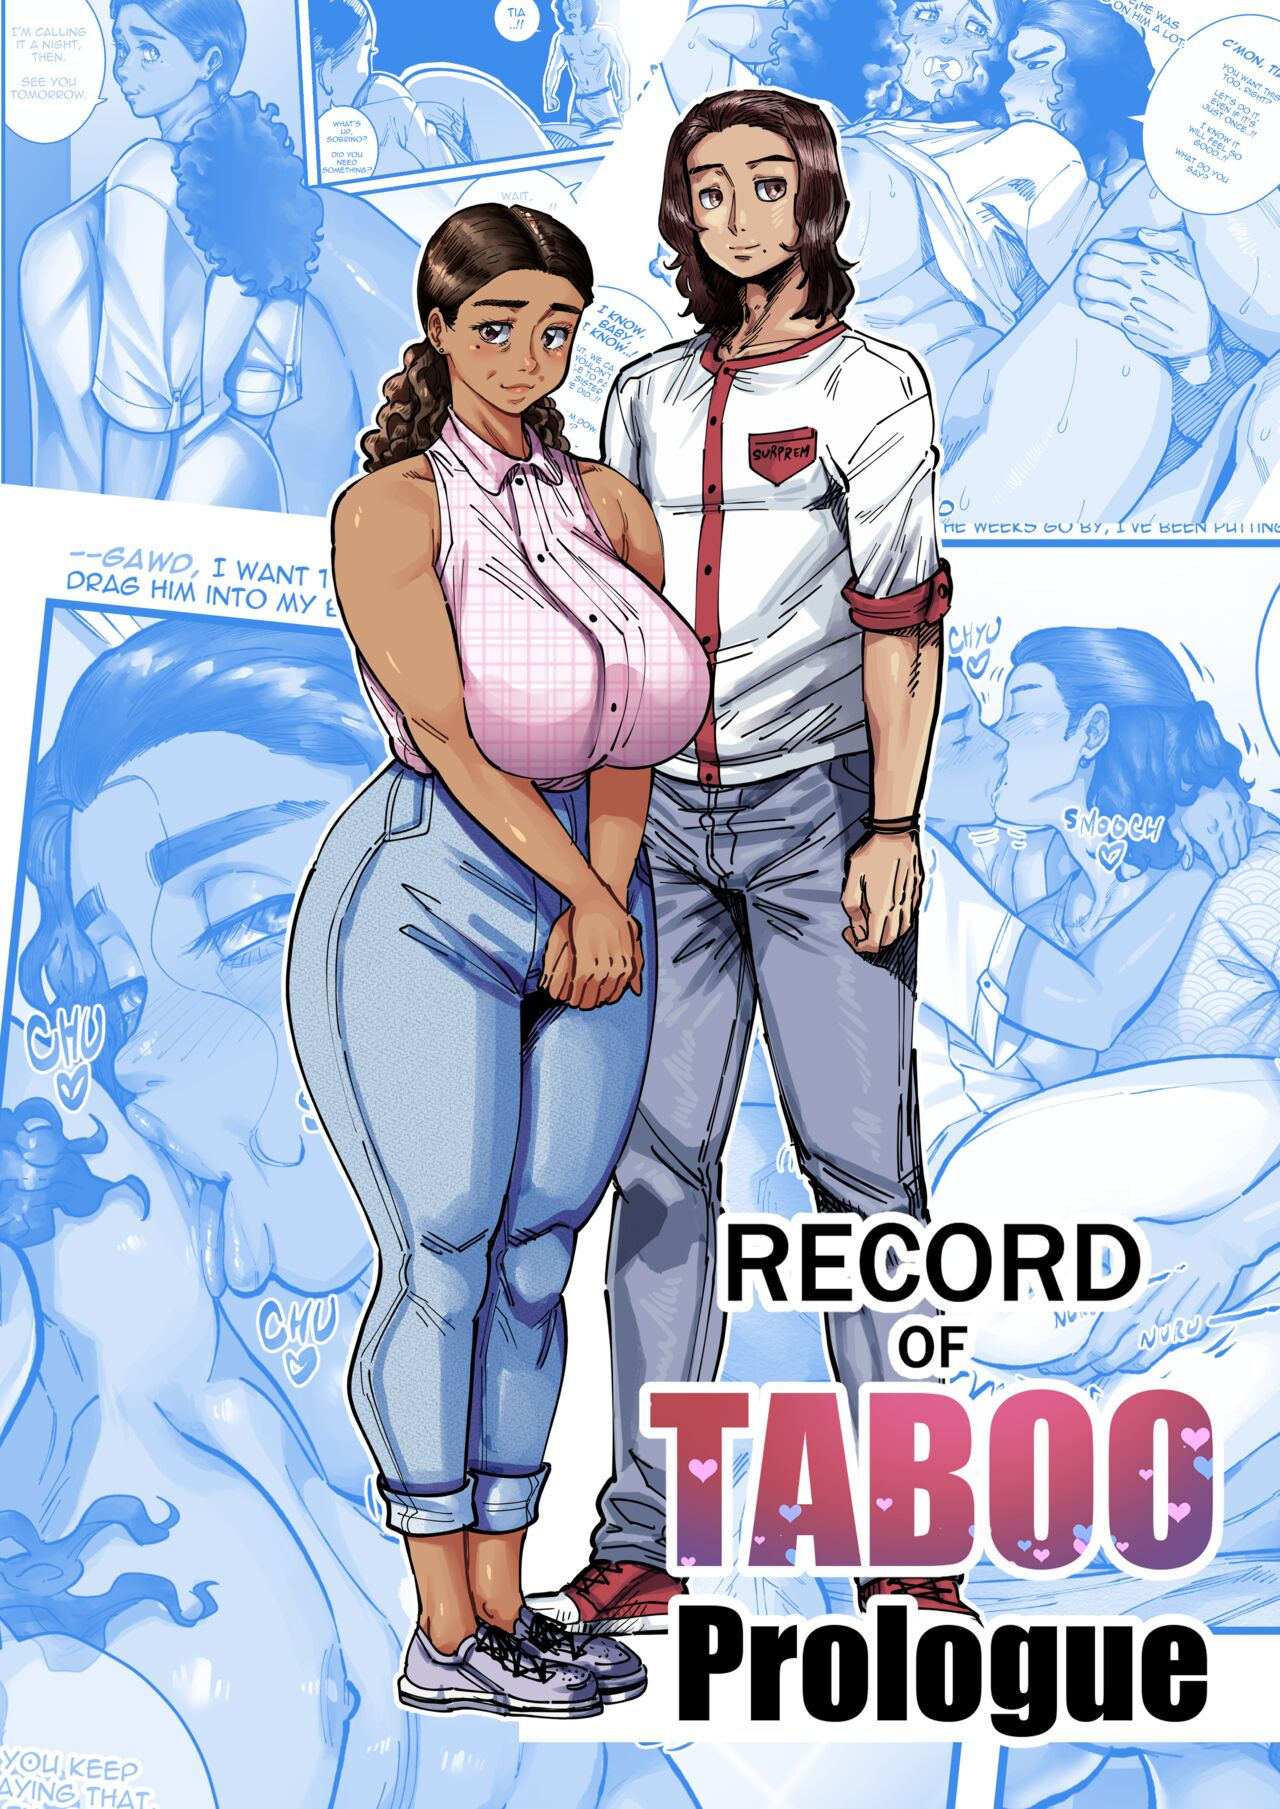 Taboo adult comics